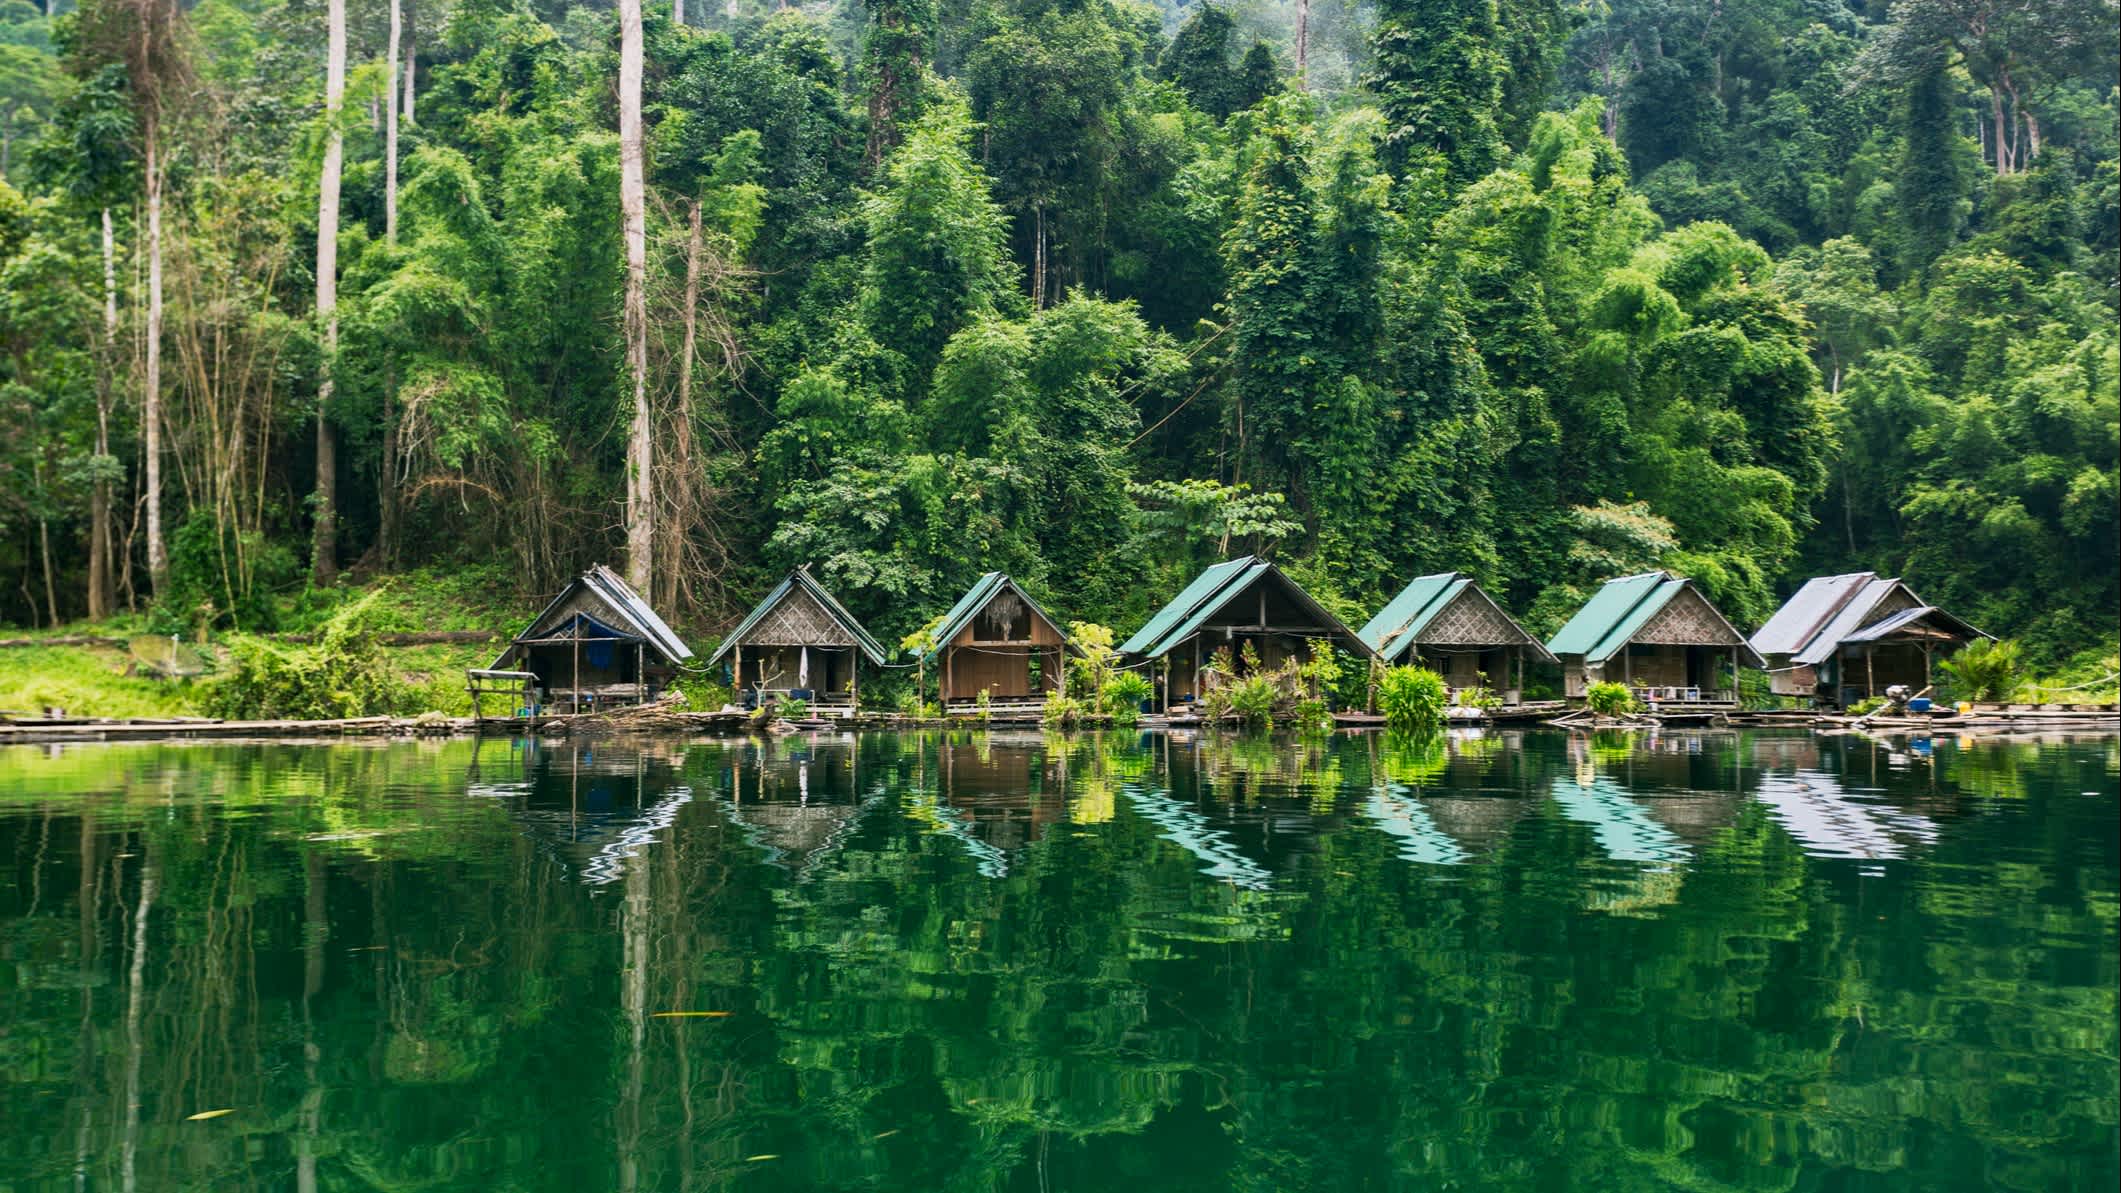 Maisons sur un lac dans une forêt tropicale.